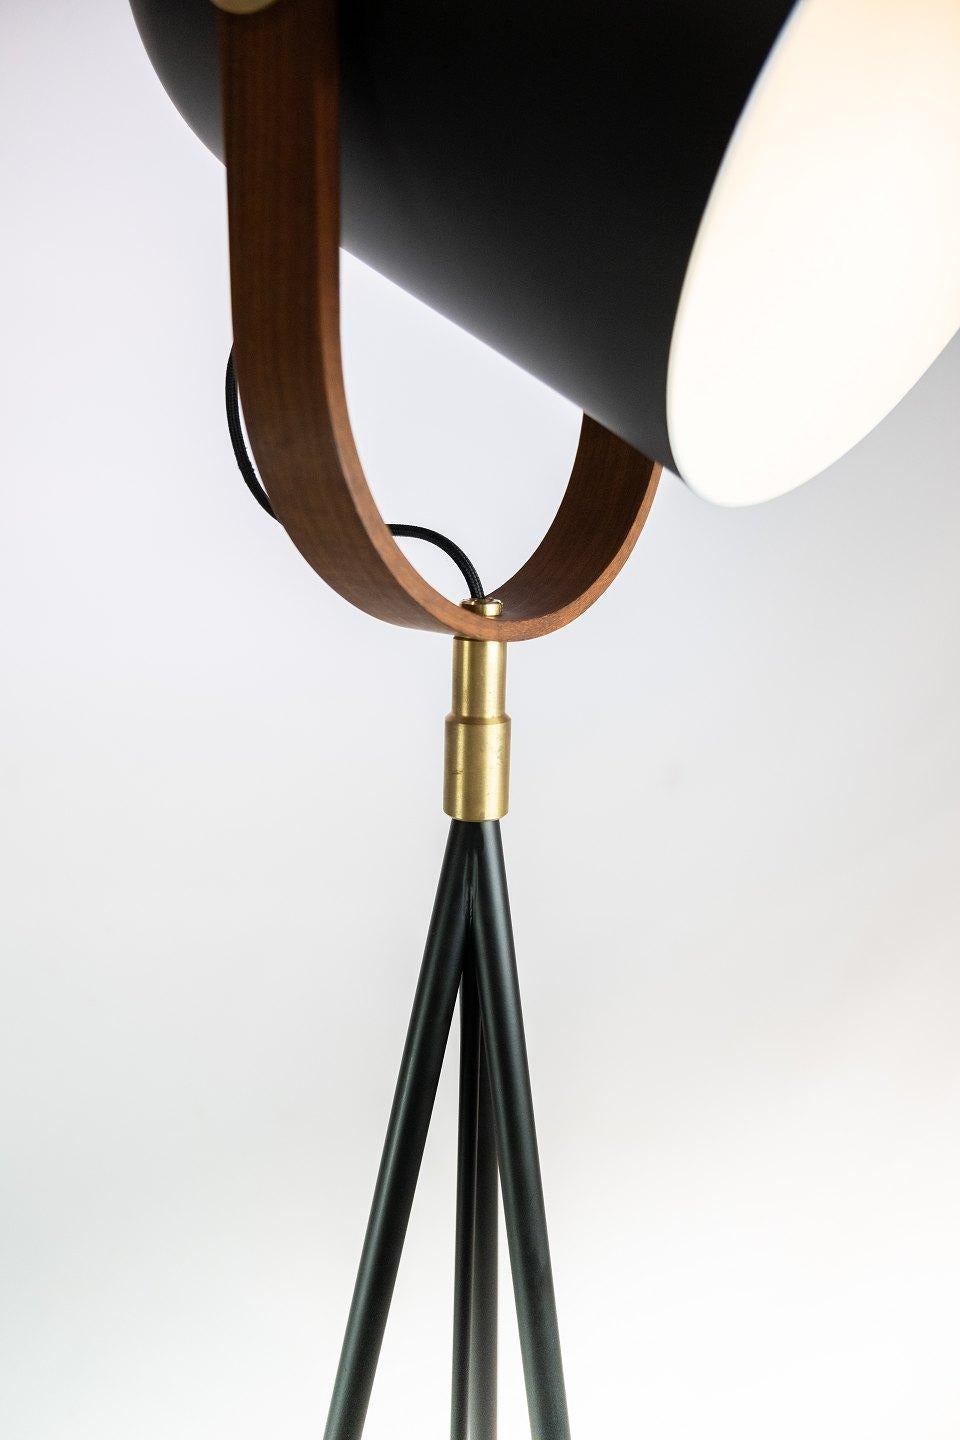 Scandinavian Modern Floor Lamp, Model Carronade, by Le Klint